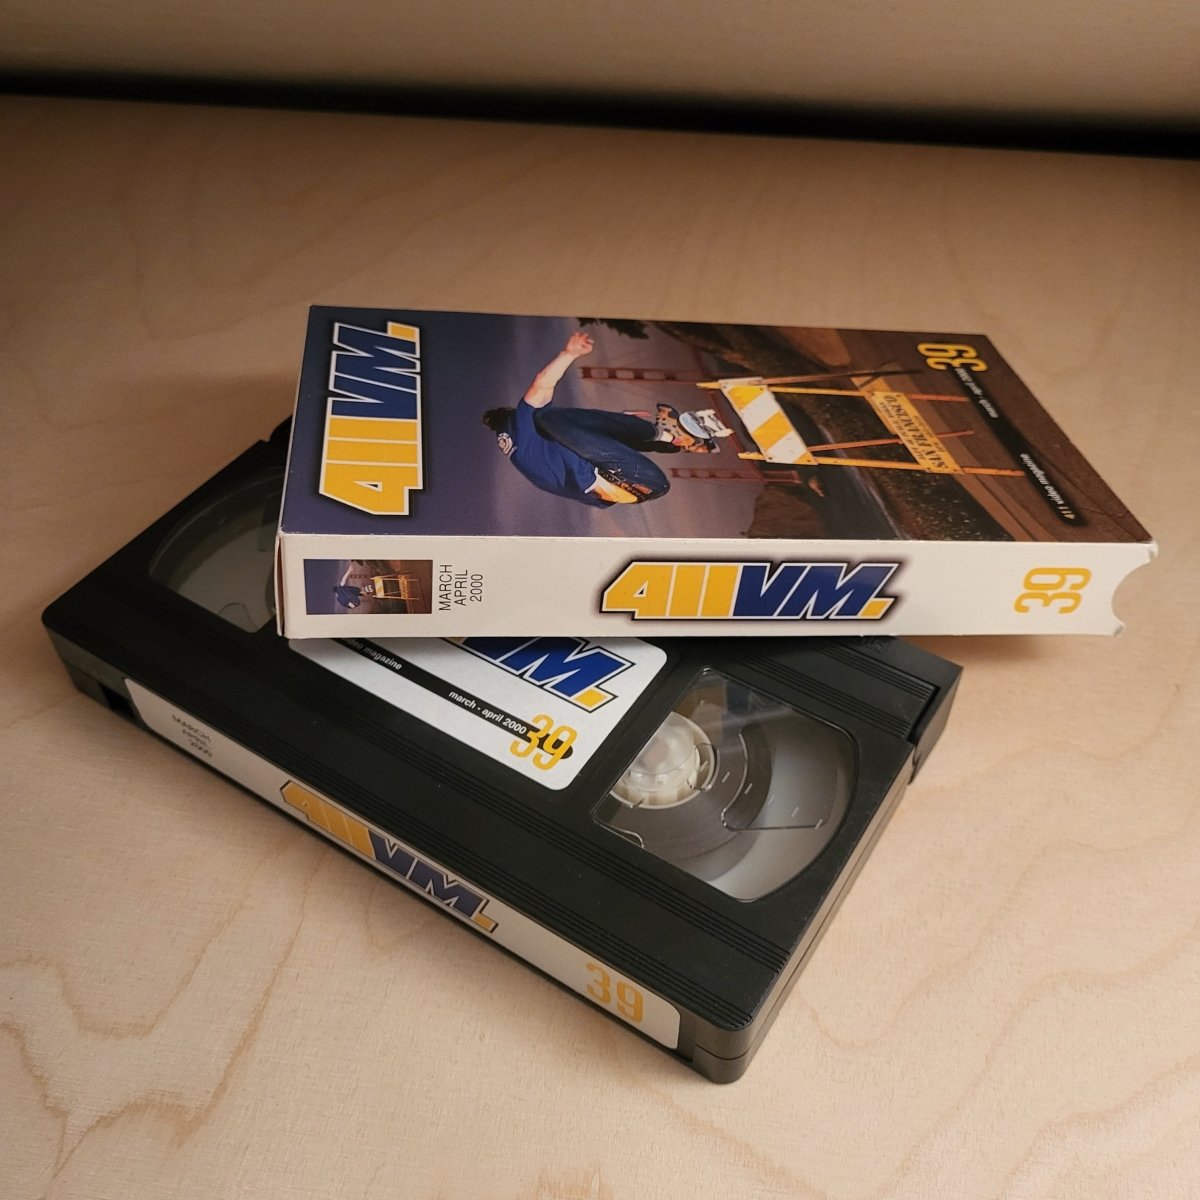 VHS Skatevideo 411VM 39 - 2000 - VHS - Rollbrett Mission